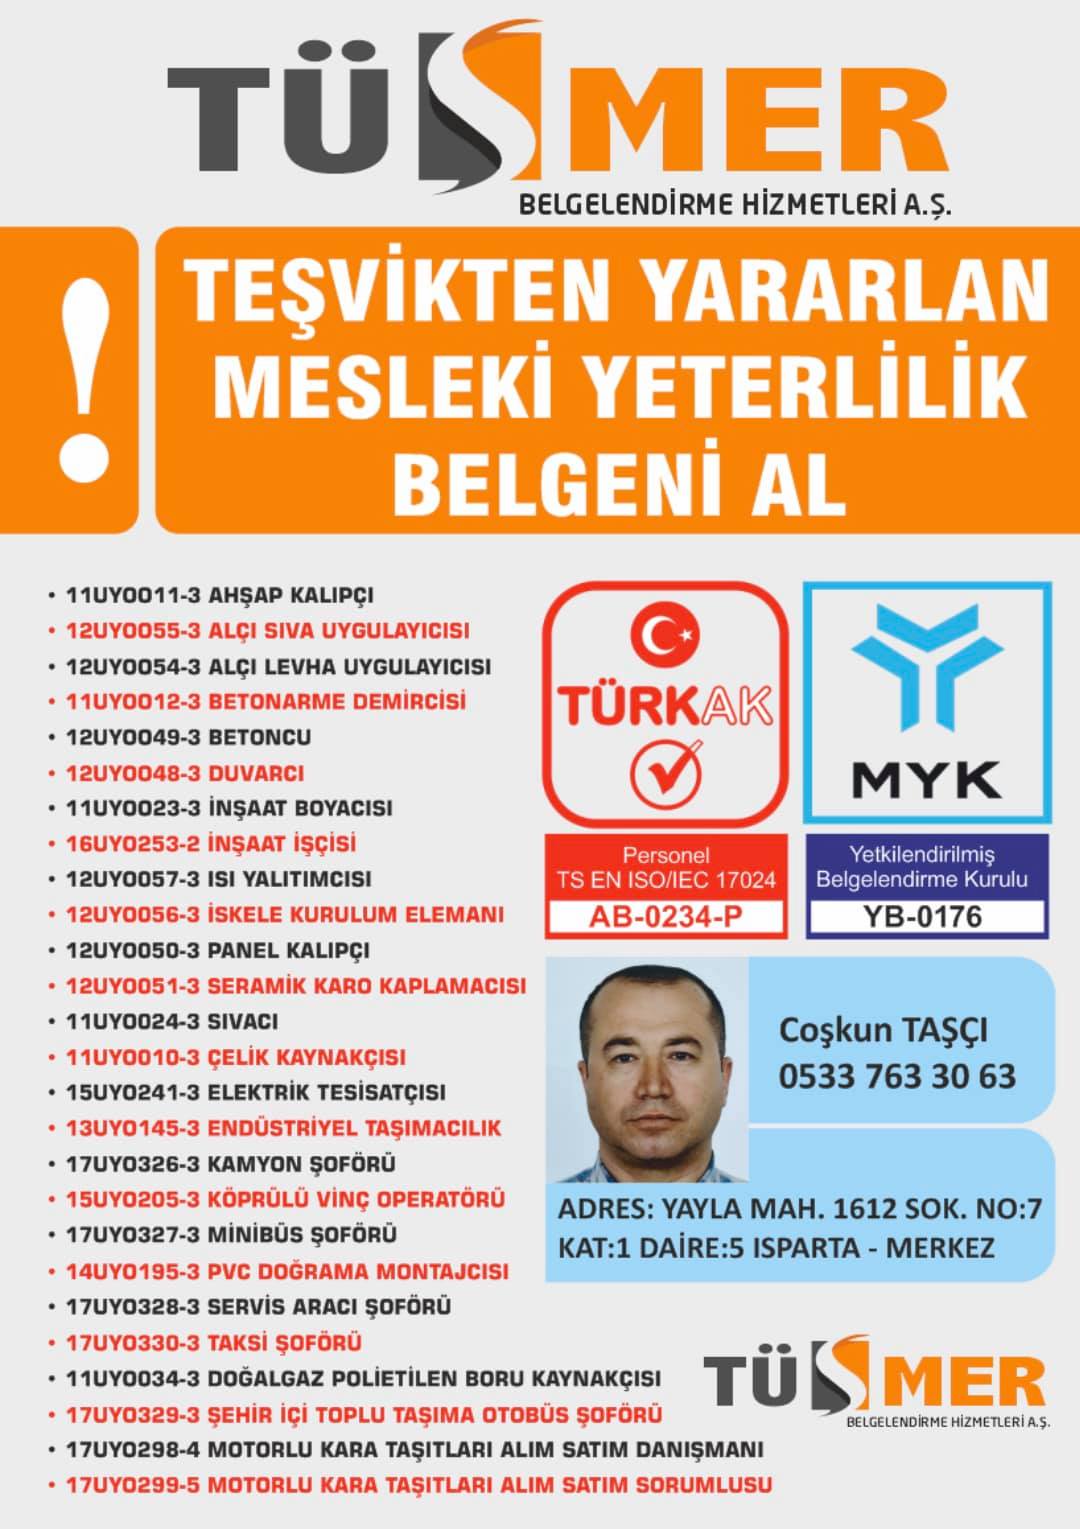 MYK MESLEKİ YETERLİLİK BELGESİ Abbasağa Beşiktaş İstanbul